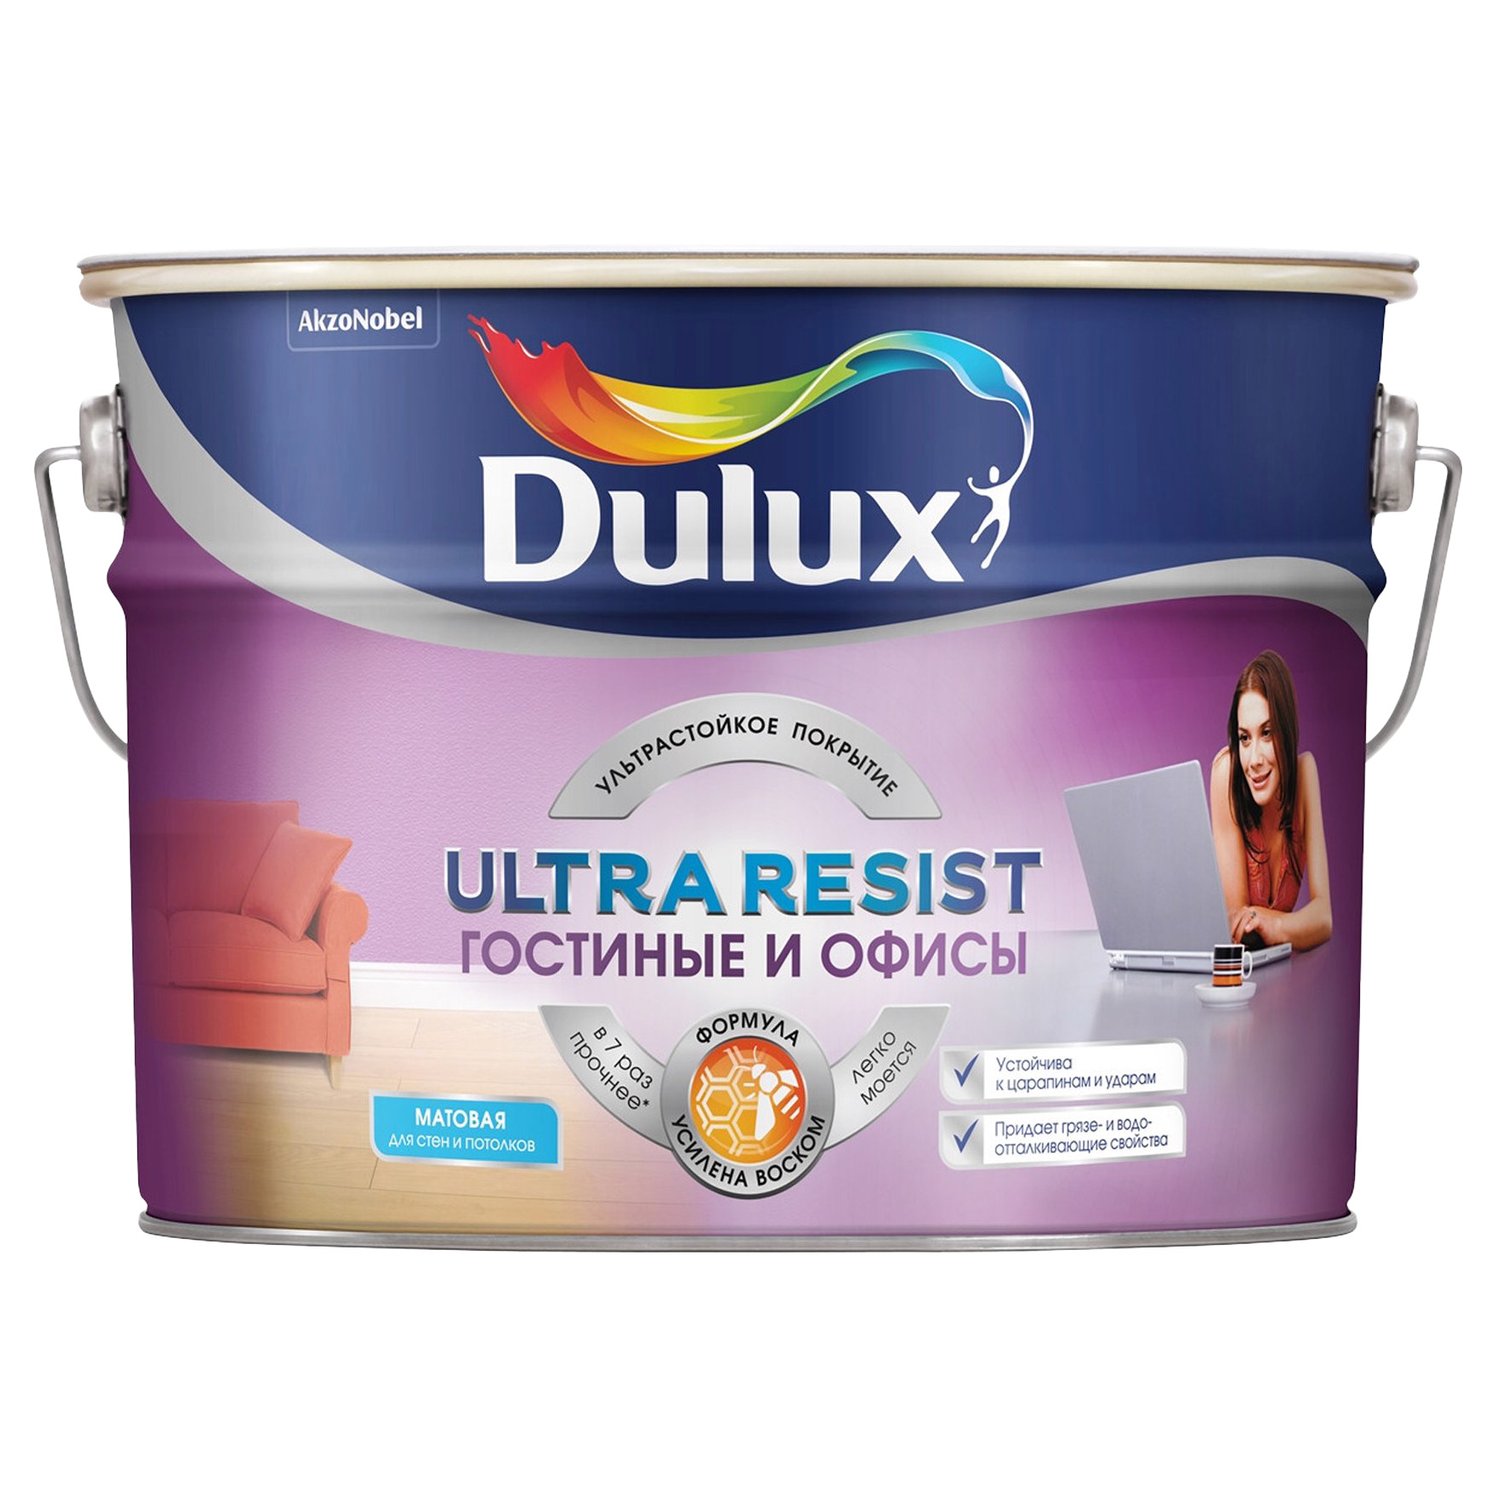 Dulux Ultra Resist Гостиные и Офисы краска для стен износостойкая